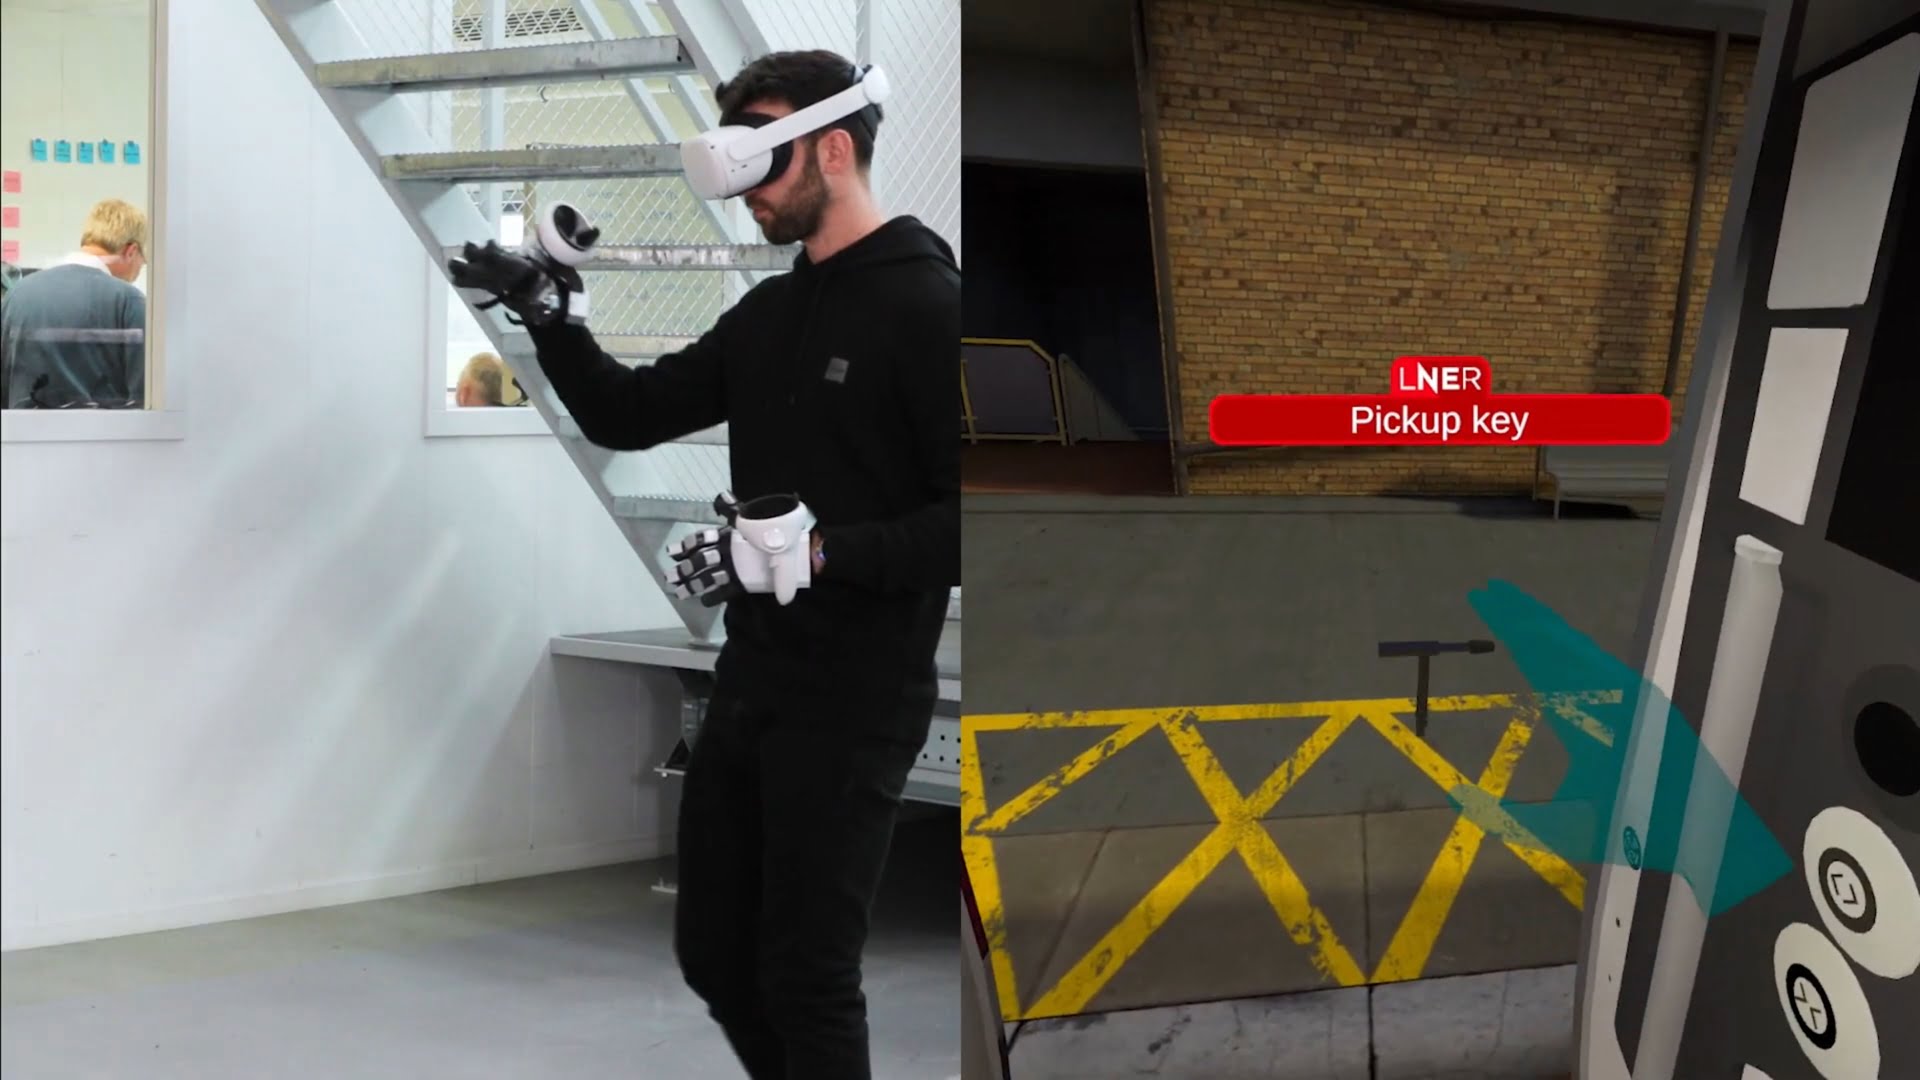 Virtual Reality: Bahnangestellte trainieren mit VR-Handschuh